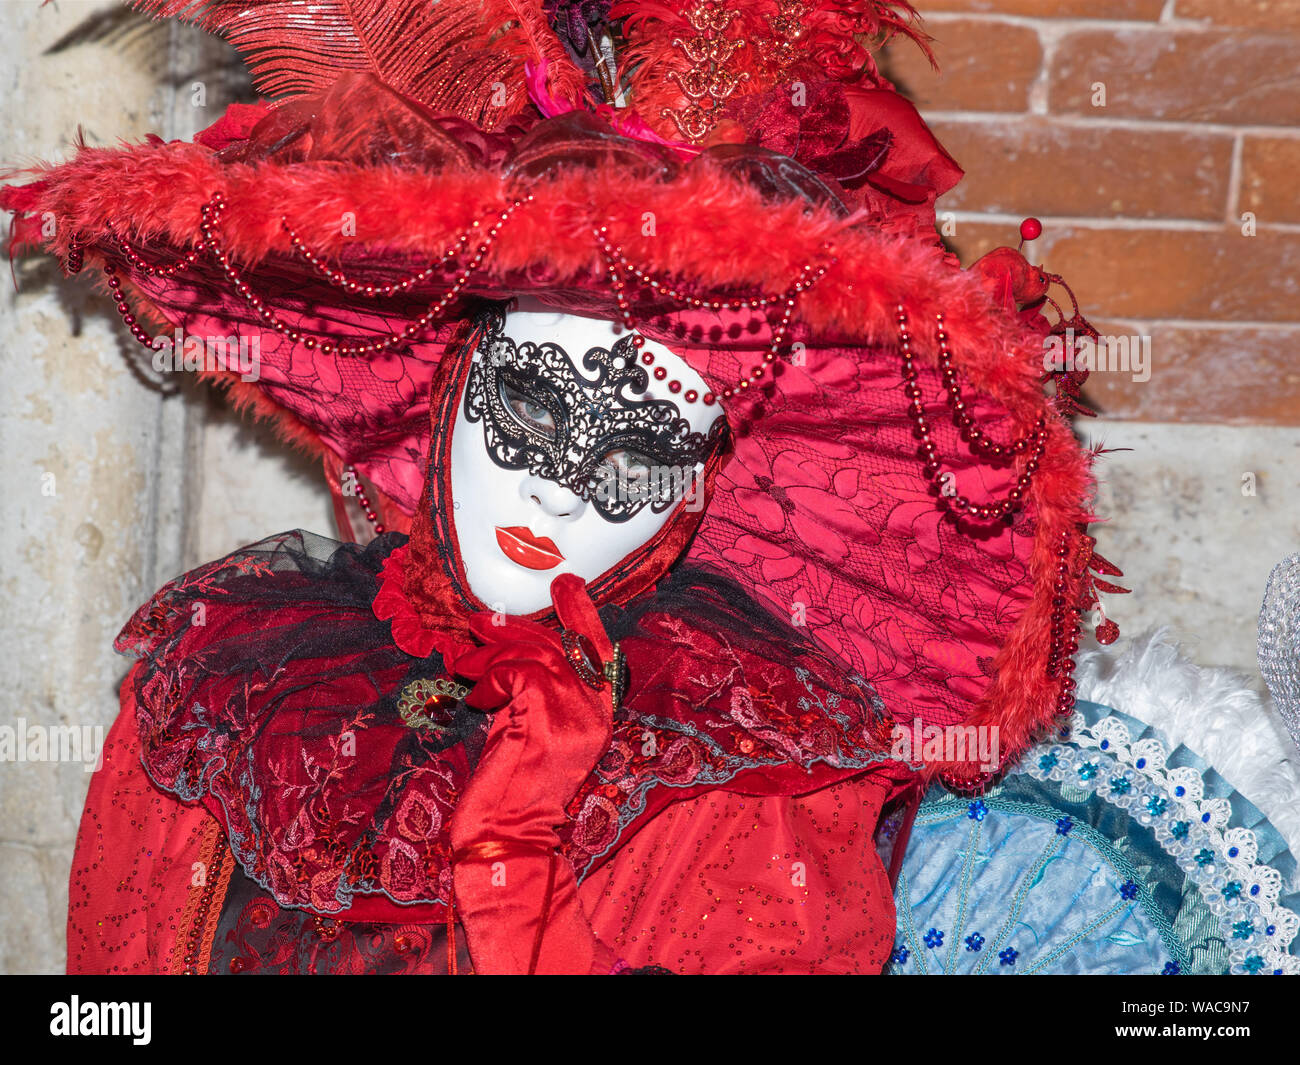 Dame en costume rouge et blanc masque au carnaval de Venise. Très décoratif brillant costume avec détails, yeux visible derrière le masque. Old wall background Banque D'Images